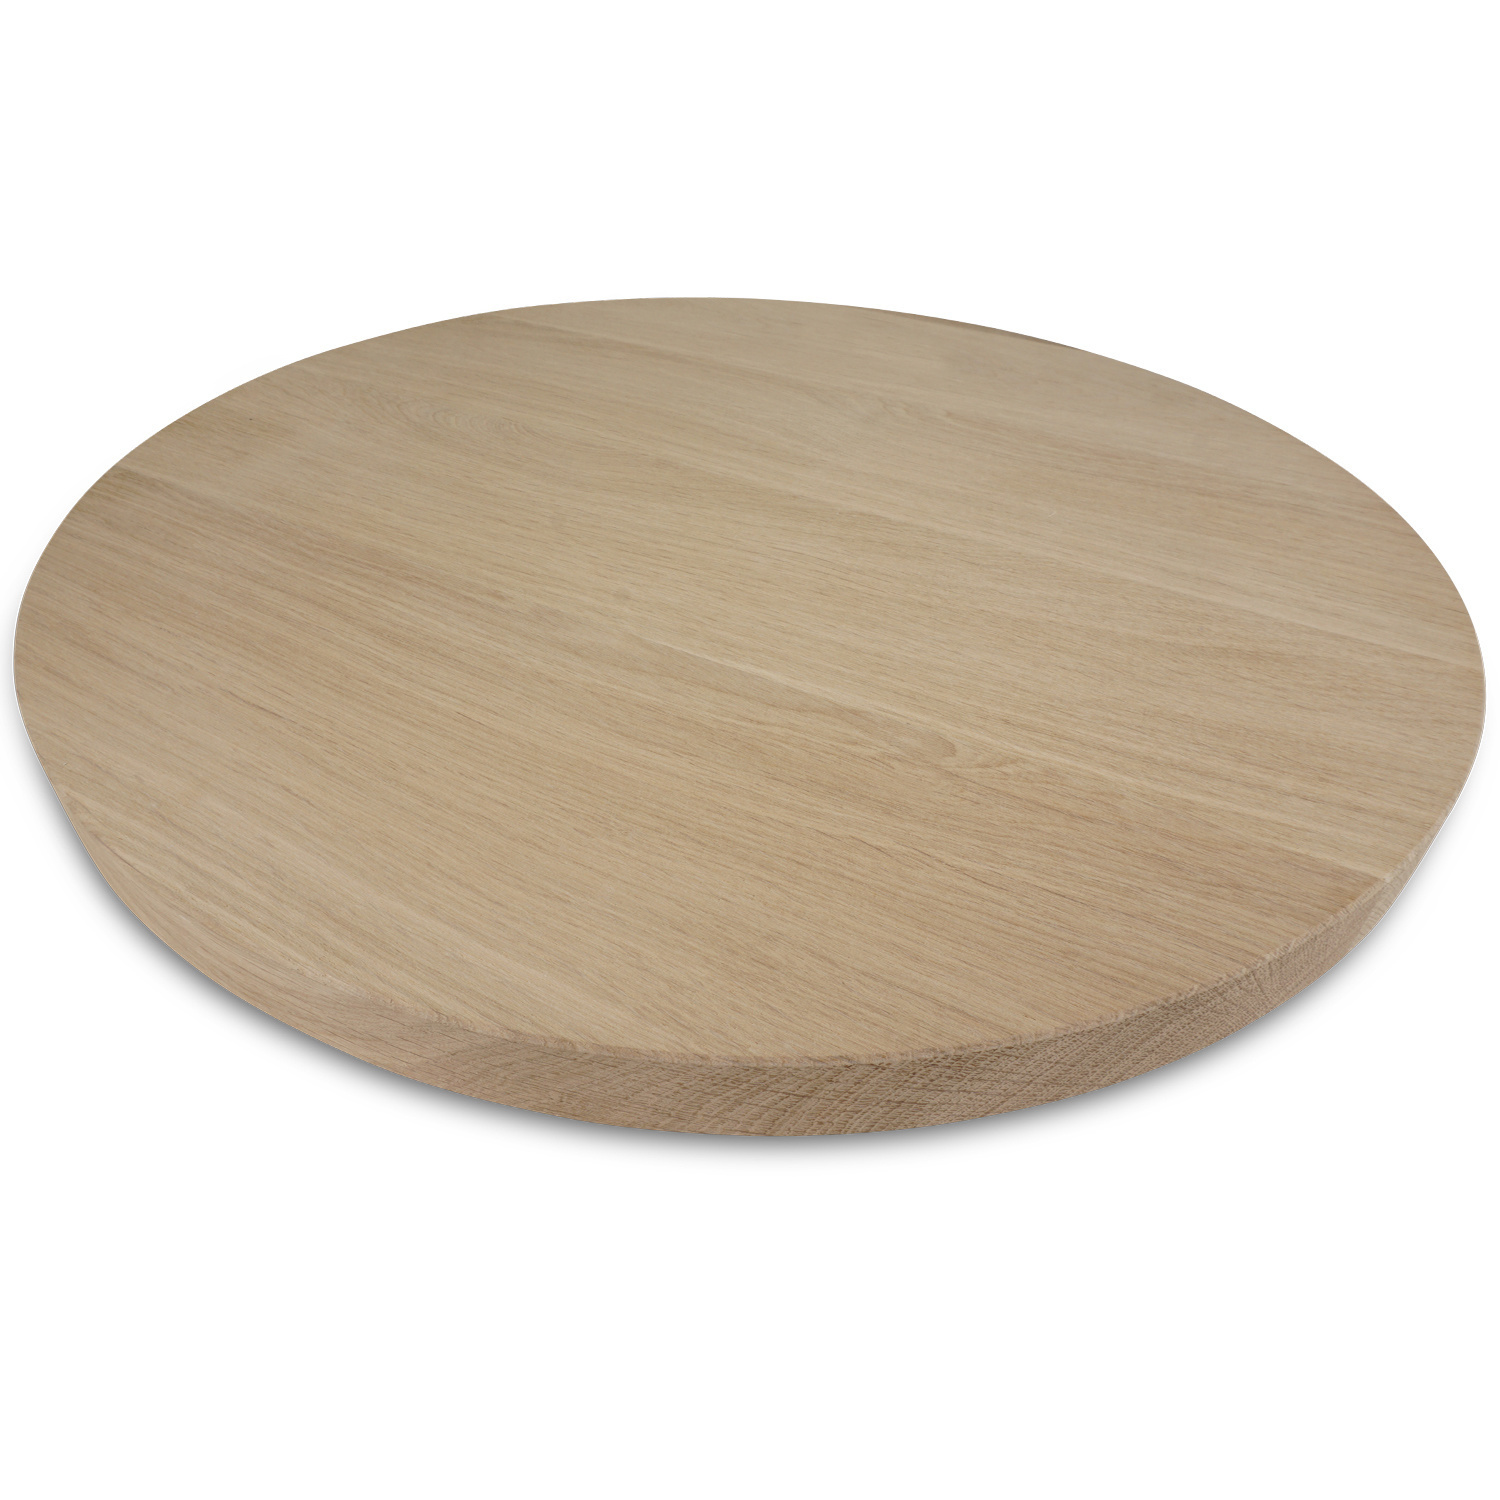  Tischplatte Eiche rund nach Maß - 4 cm dick (1-Schicht) - Breite Lamellen (10 - 12 cm breit) - Eichenholz A-Qualität - verleimt & künstlich getrocknet (HF 8-12%) - Durchmesser: 50 - 117 cm